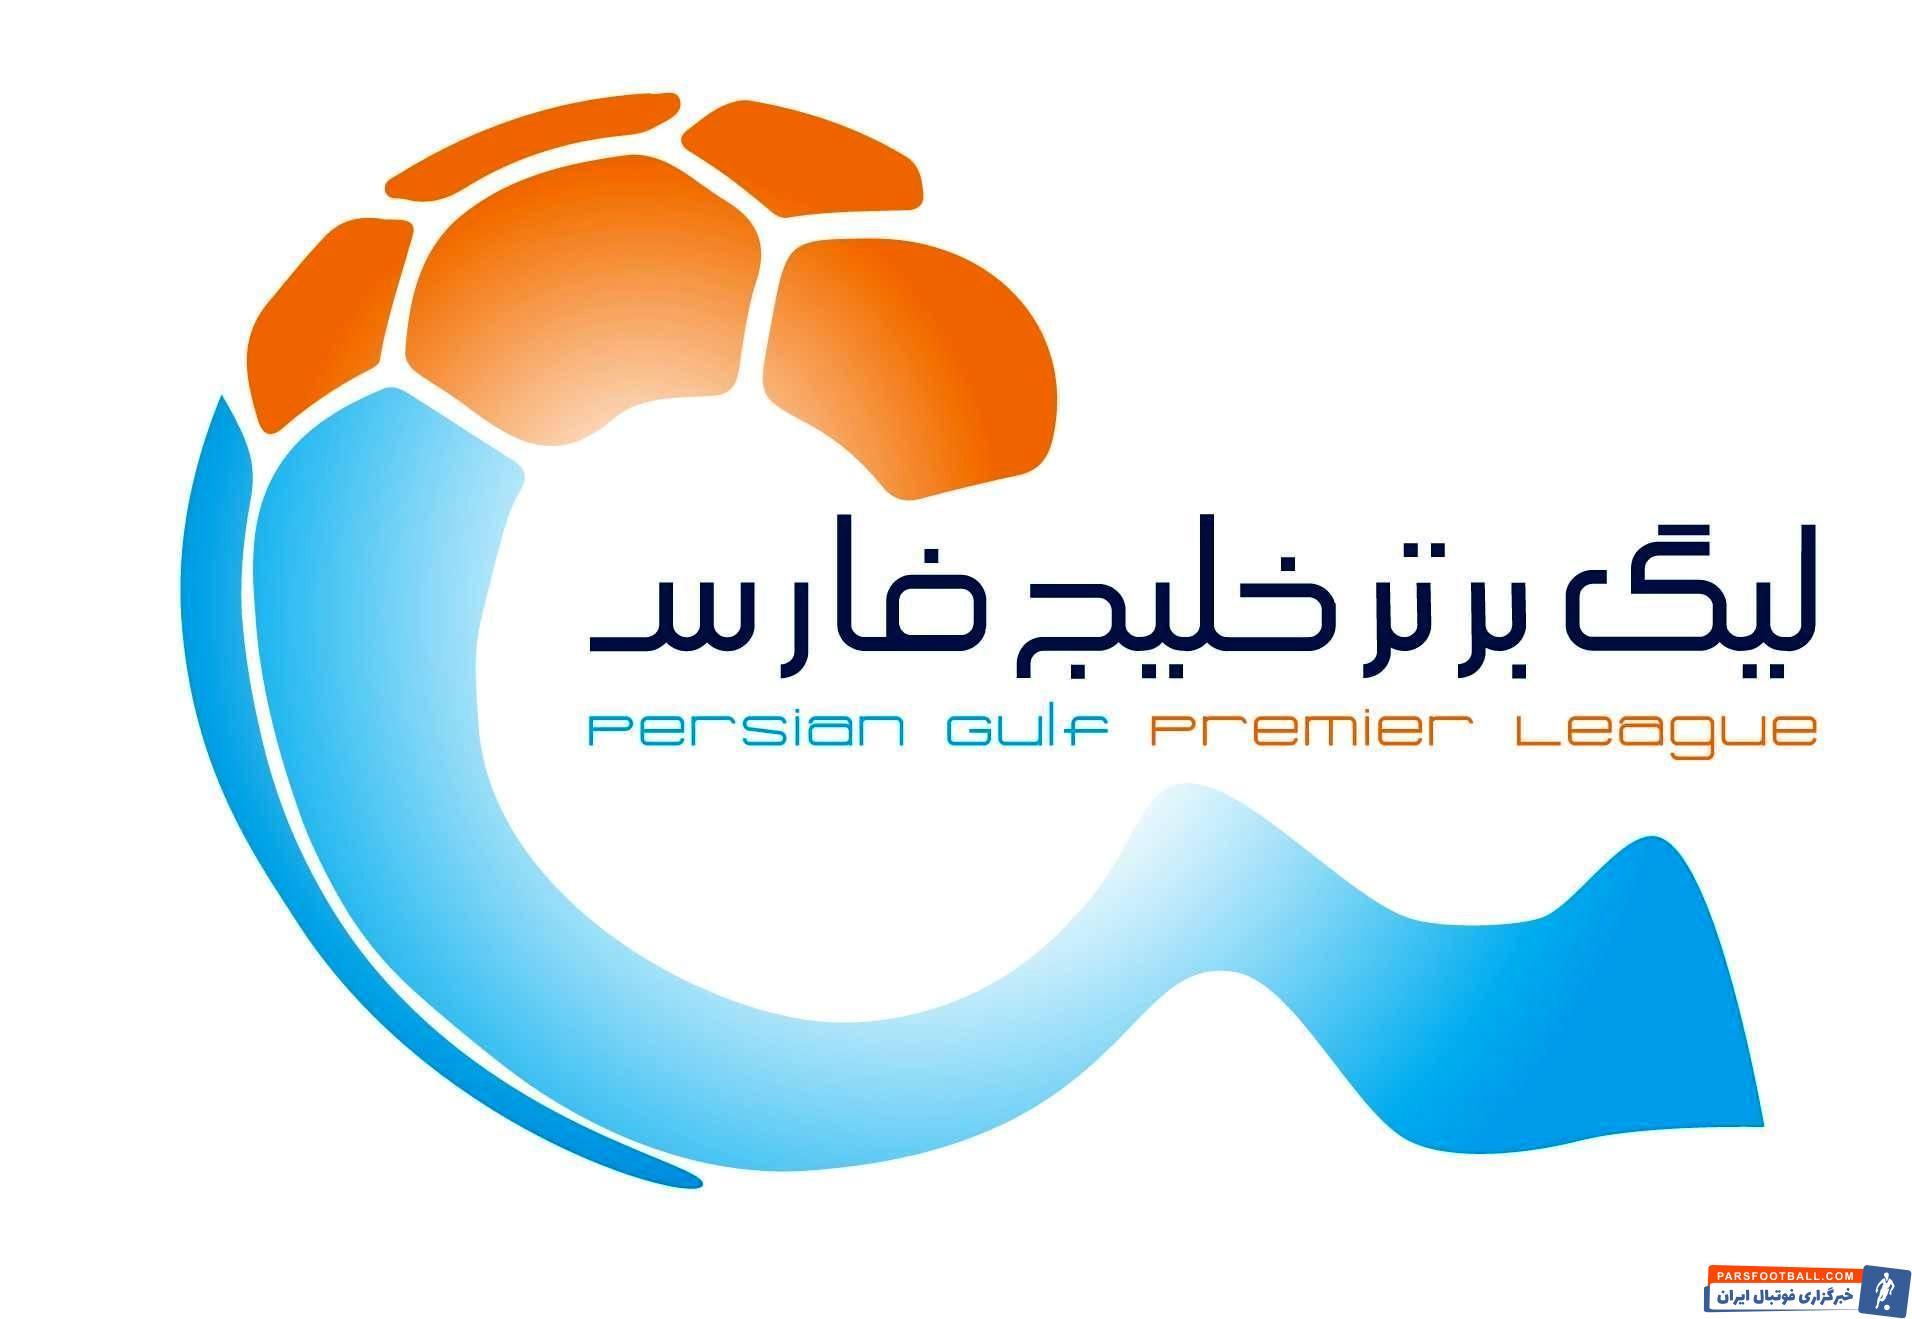 لیگ برتر ایران از ده آبان بیستمین فصل خود را آغاز می کند . در این فصل تیم های آلومینیوم اراک و مس رفسنجان به لیگ اضافه شدند و هر دو تیم بوشهری لیگ سقوط کردند.